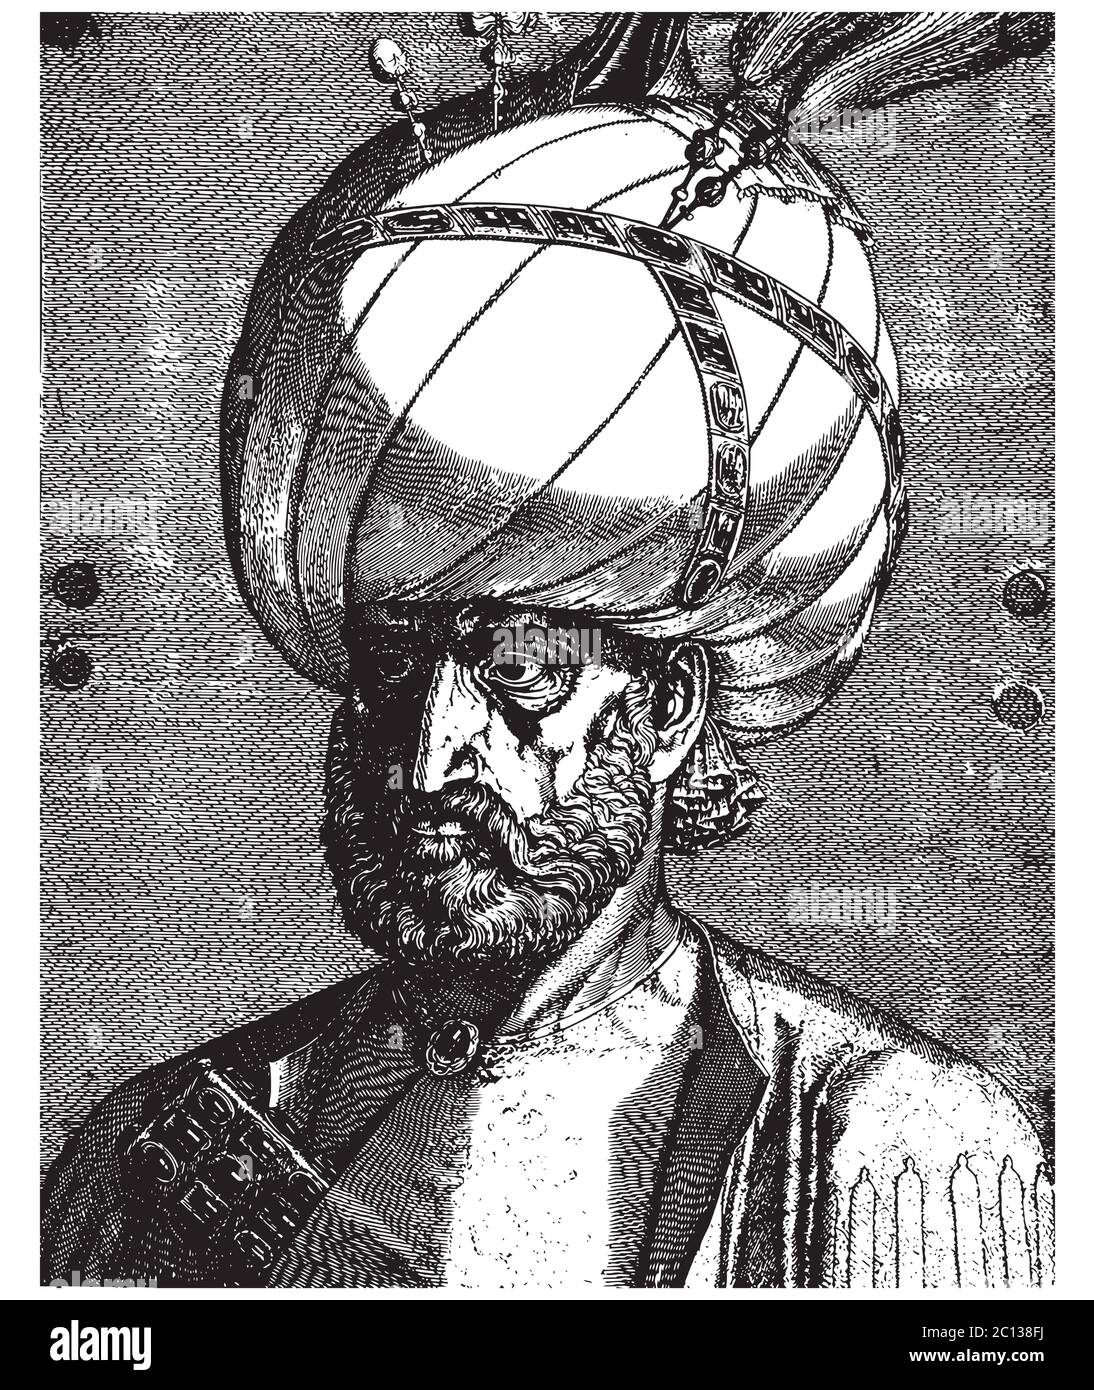 Ottoman Sultan Suleiman le magnifique portrait, gravure vintage illustration vectorielle Illustration de Vecteur